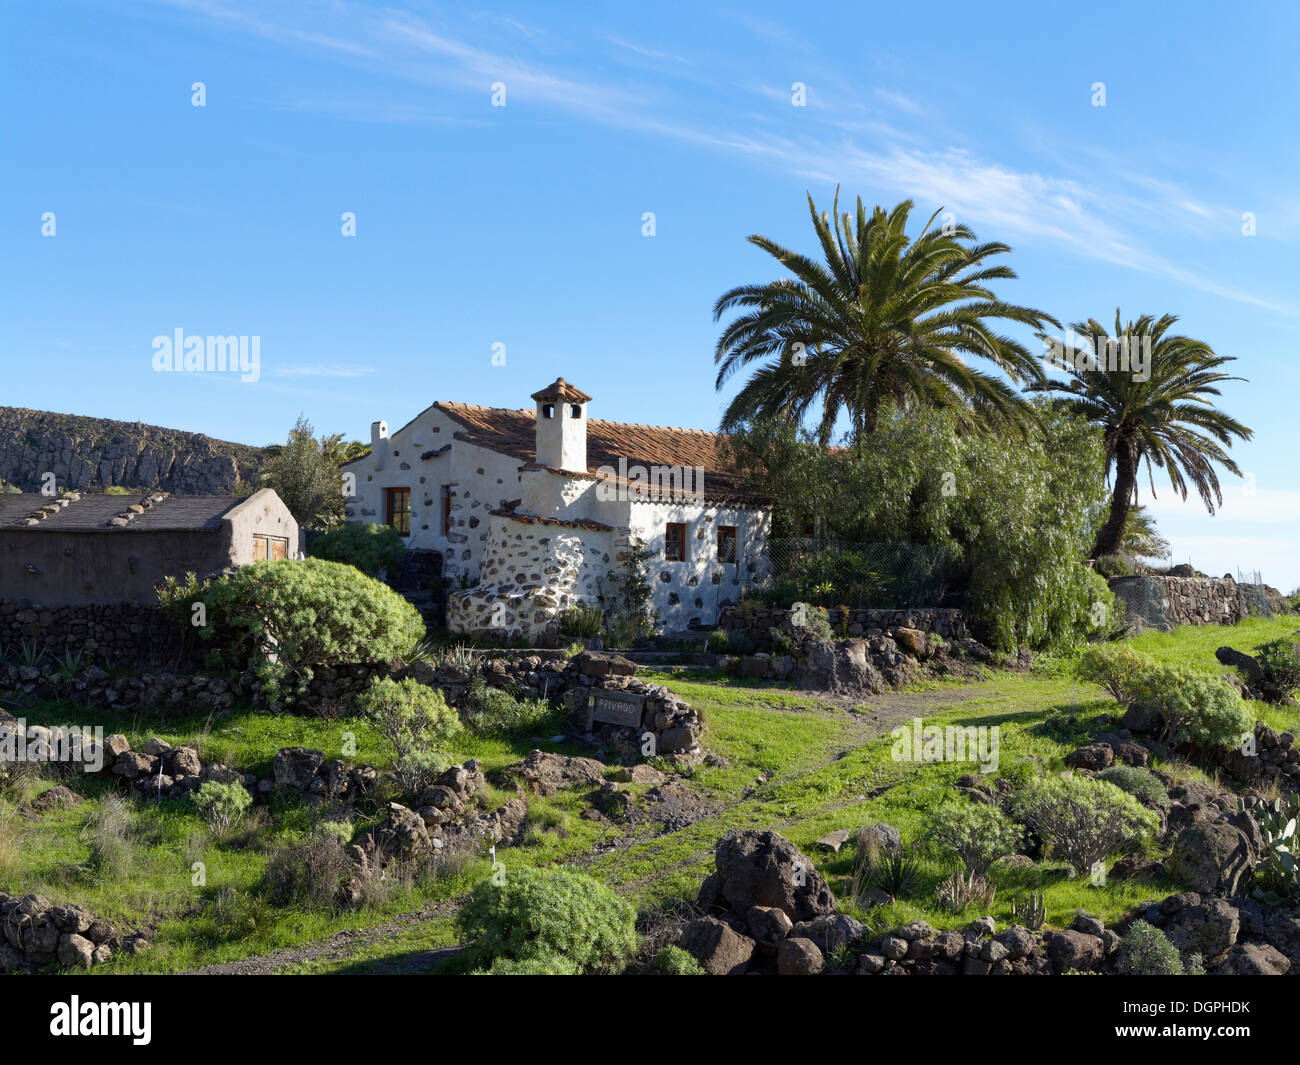 Villa, Lomo de Sabinilla, Lomo de Sabinilla, a Alajero, La Gomera, isole Canarie, Spagna Foto Stock